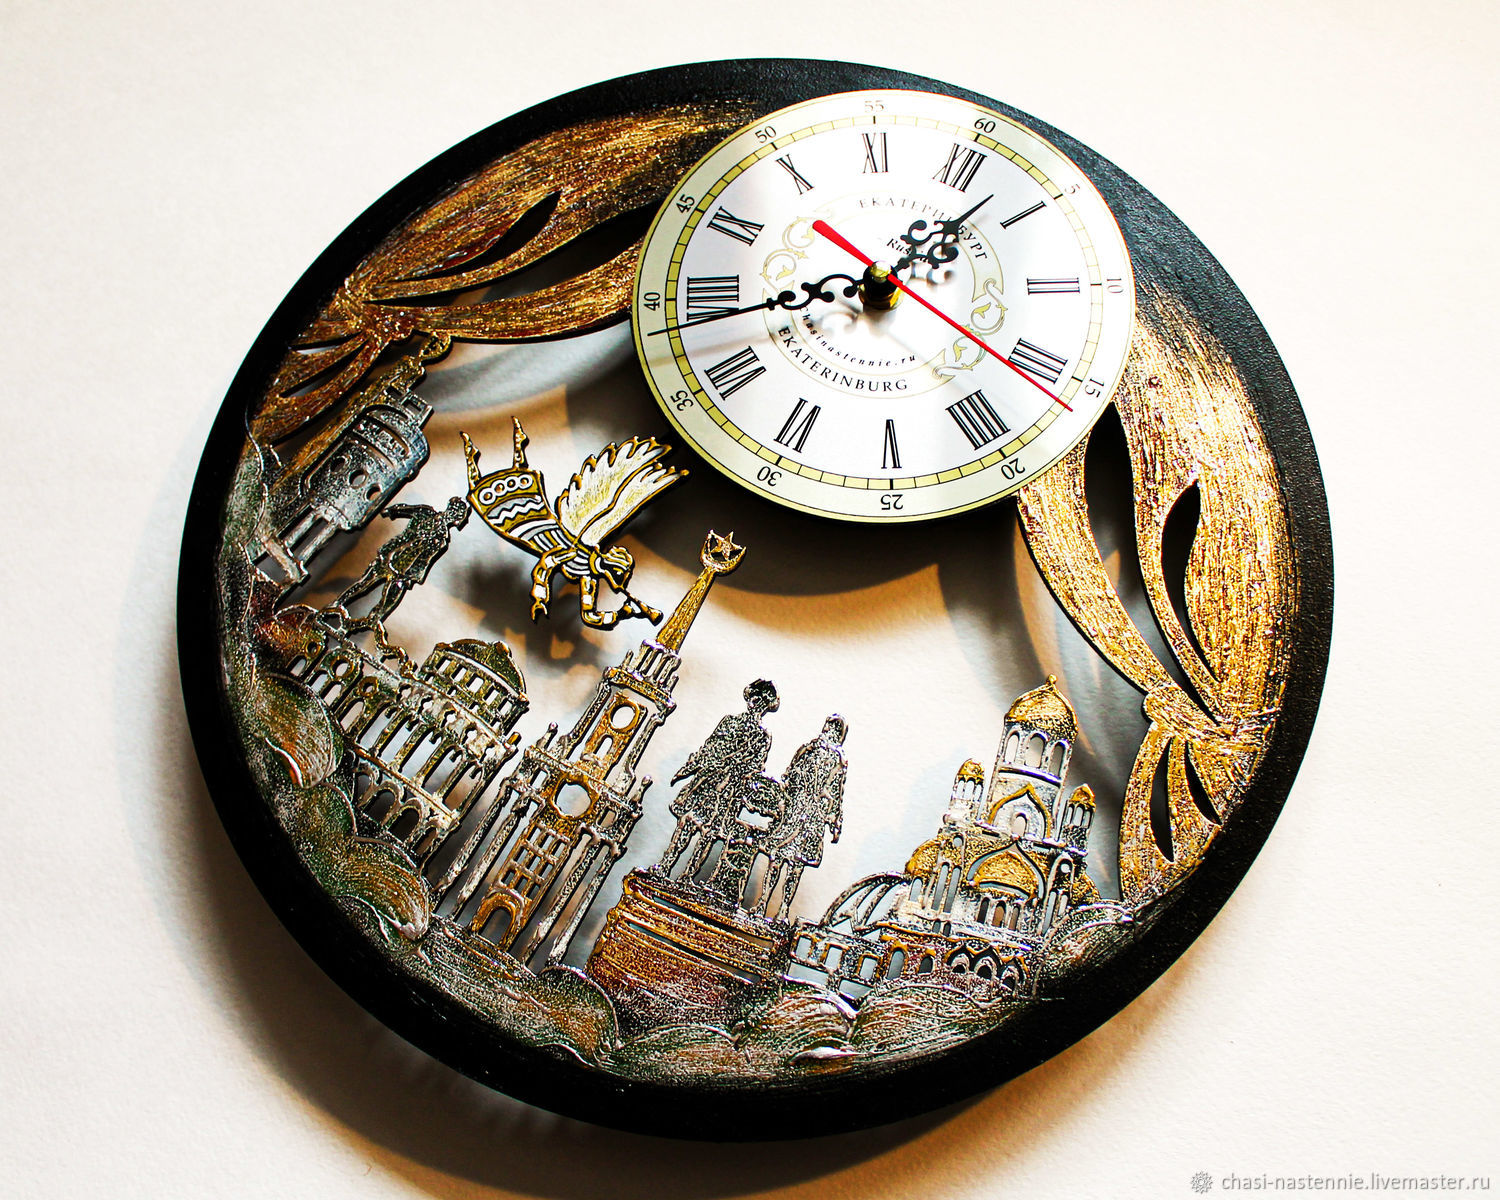 Сайт часов екатеринбург. Часы подарочные настенные. Часы в городе. Подарочные часы стенные. Часы Екатеринбург.